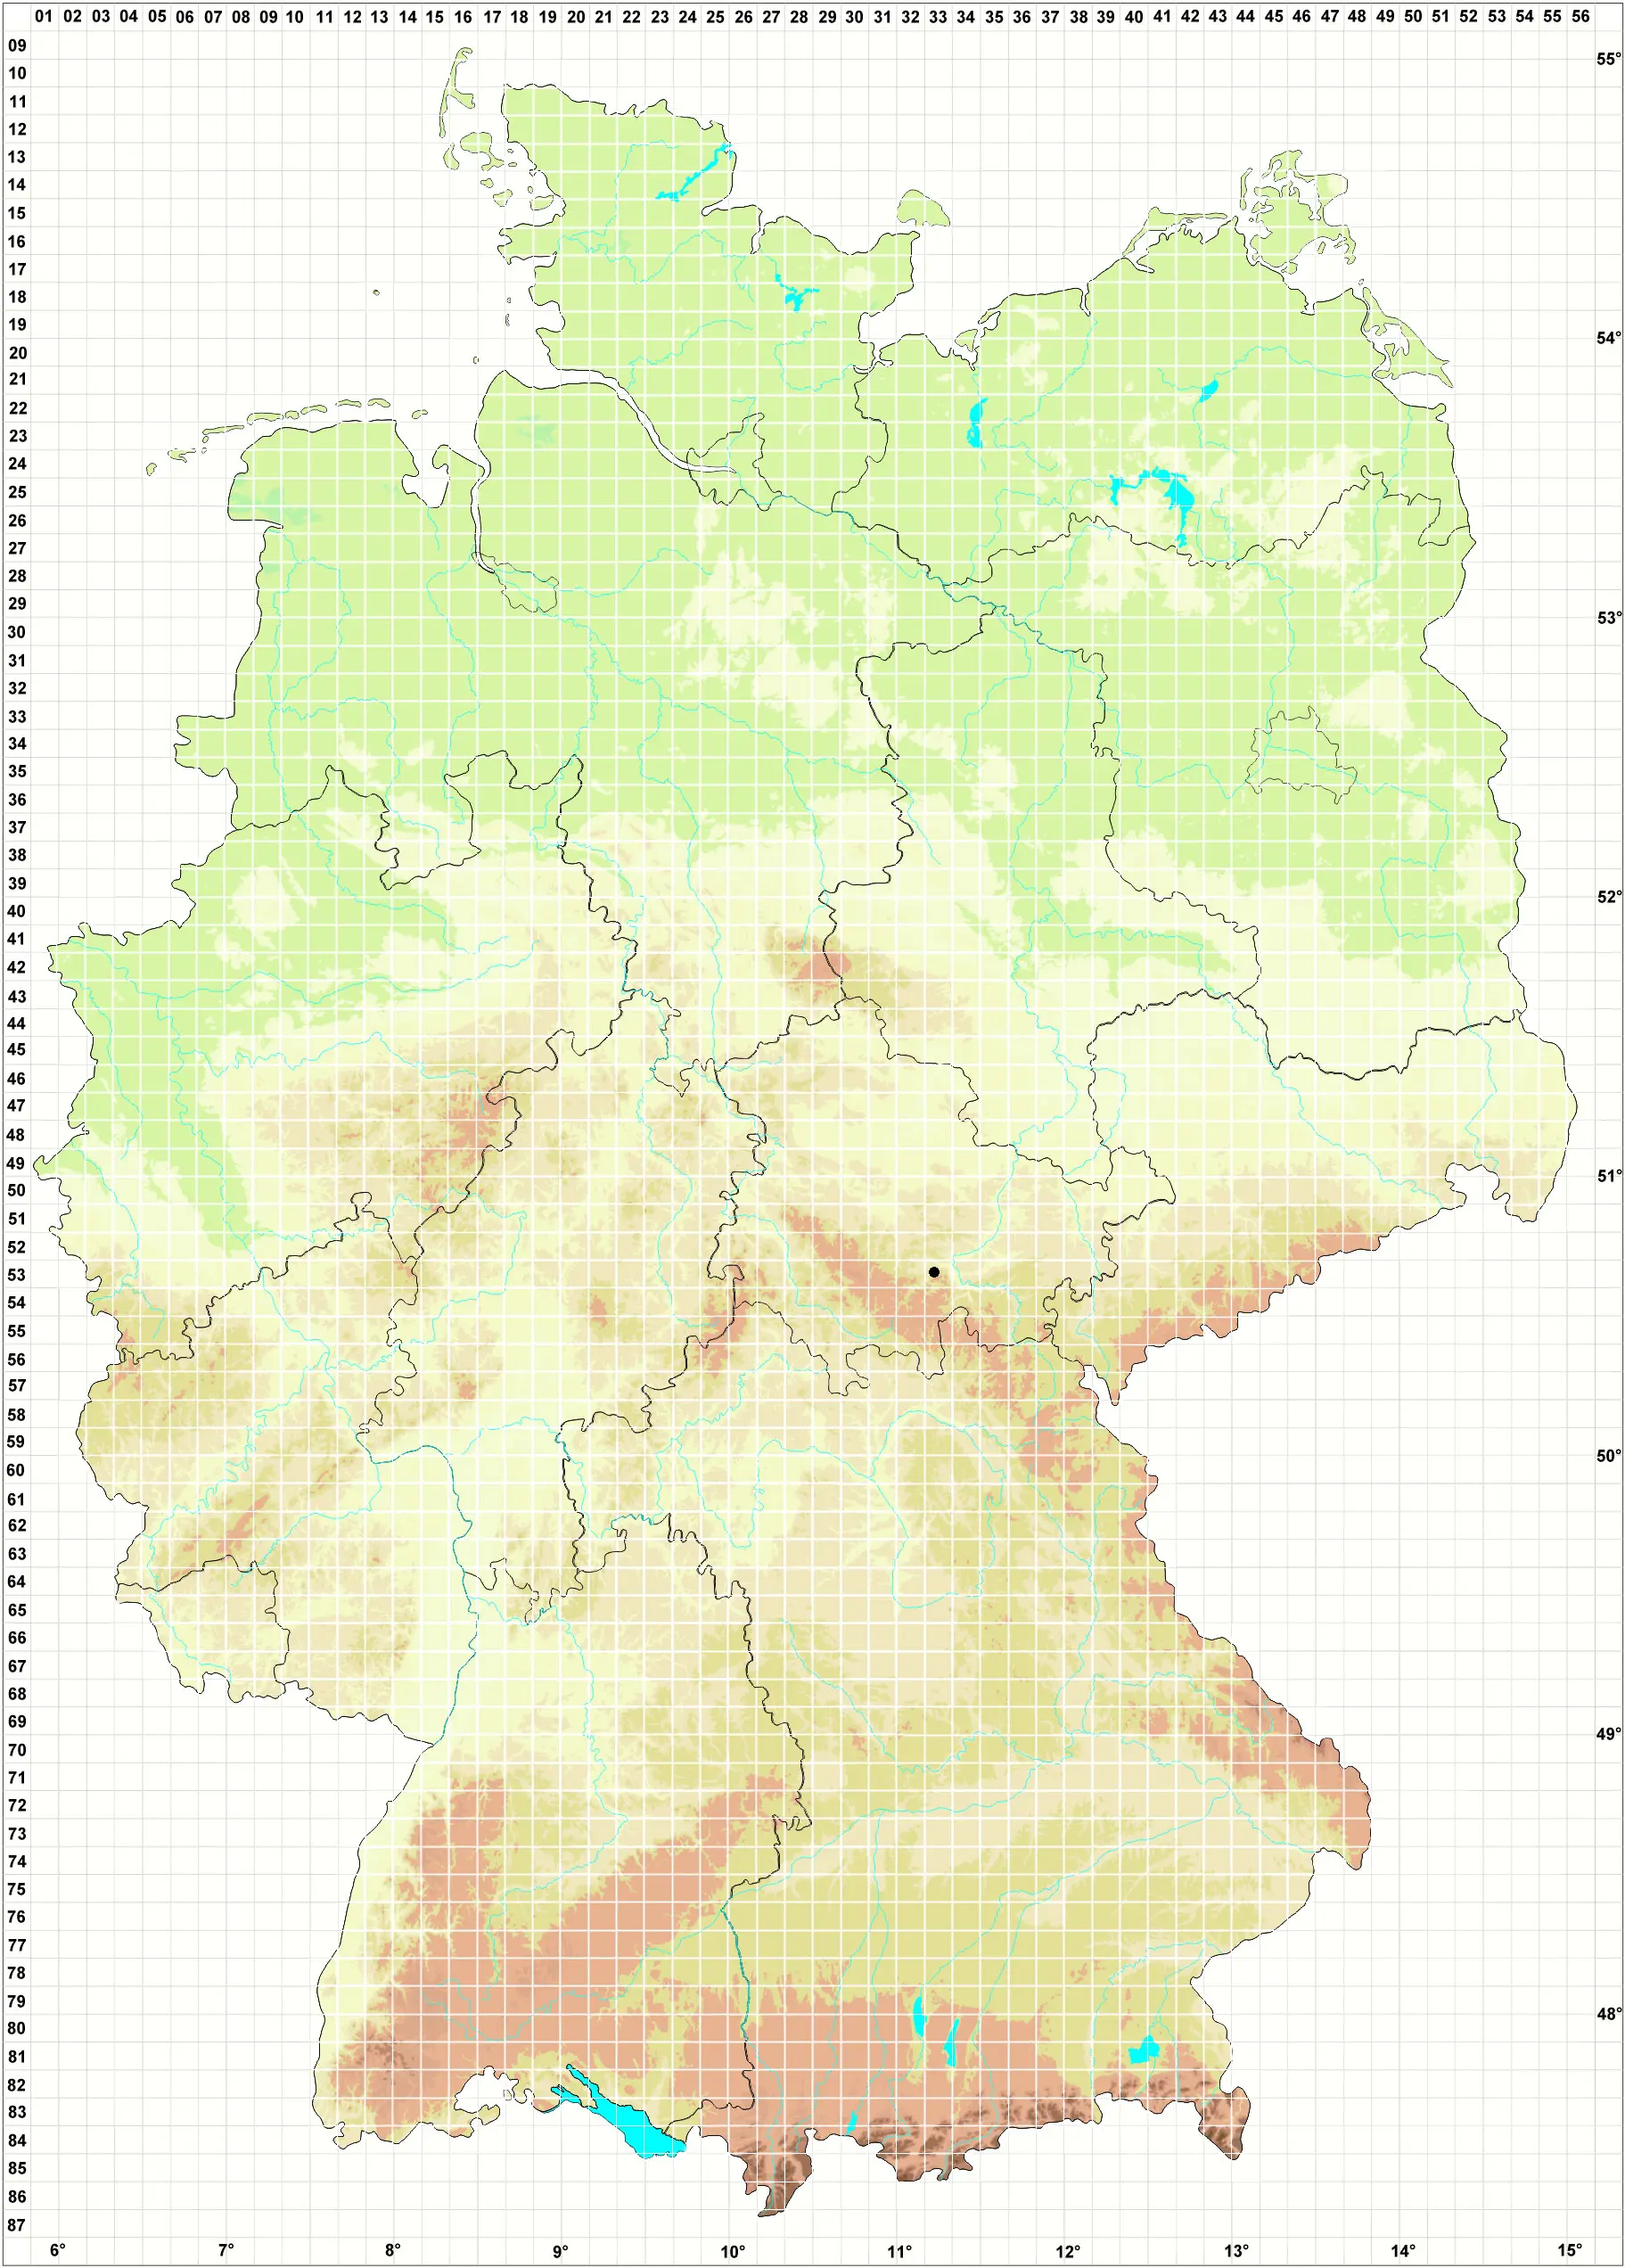 Karte H. Grünberg, L. Meinunger, W. Schröder, D. Berger 05.11.2005